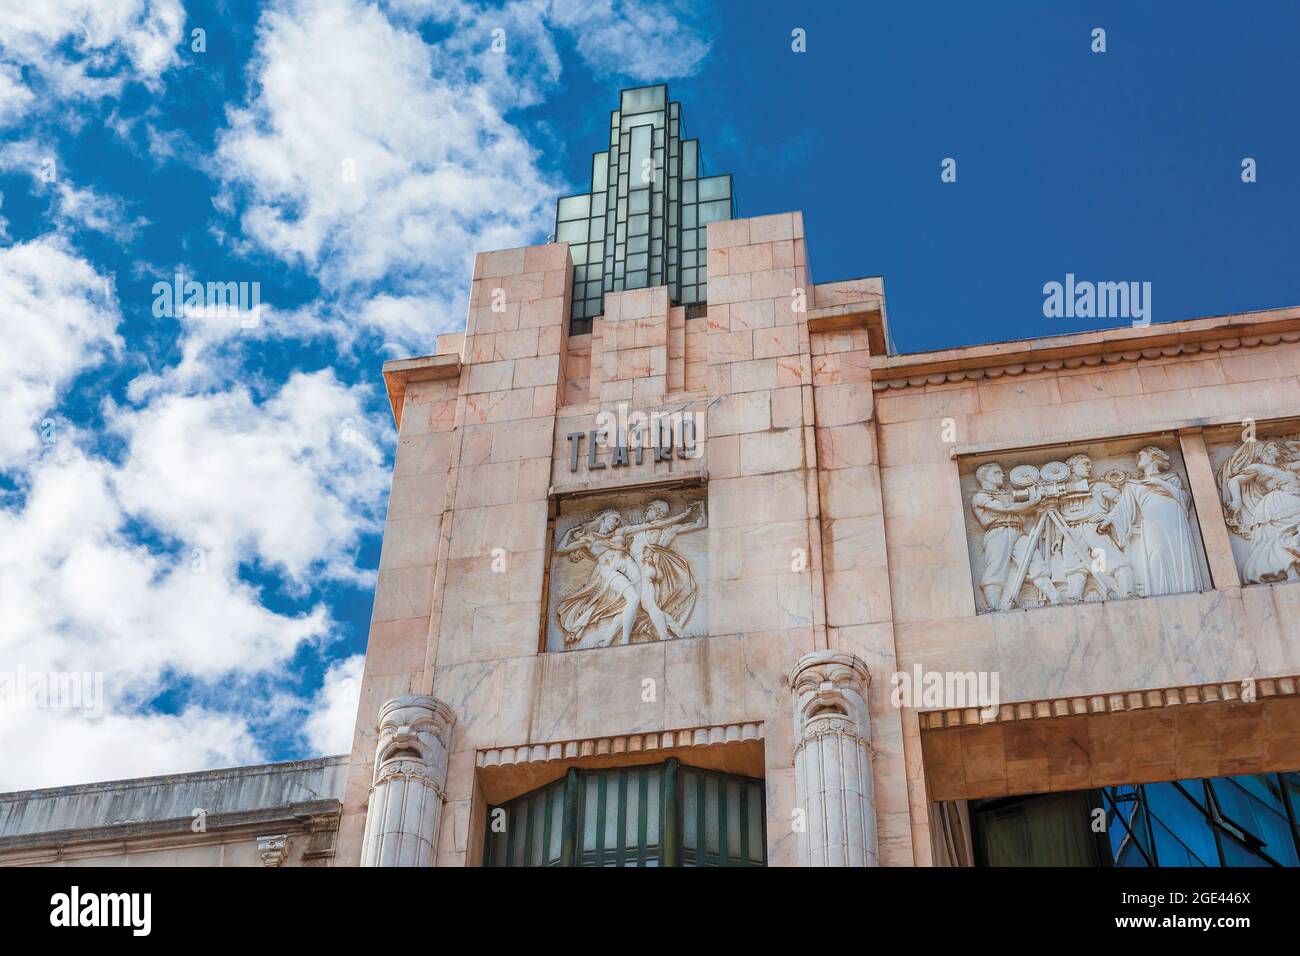 Particolare della splendida facciata Art Deco dell'ex Teatro Eden nel centro di Lisbona, progettata dagli architetti Cassiano Branco e Carlo Florencio Foto Stock